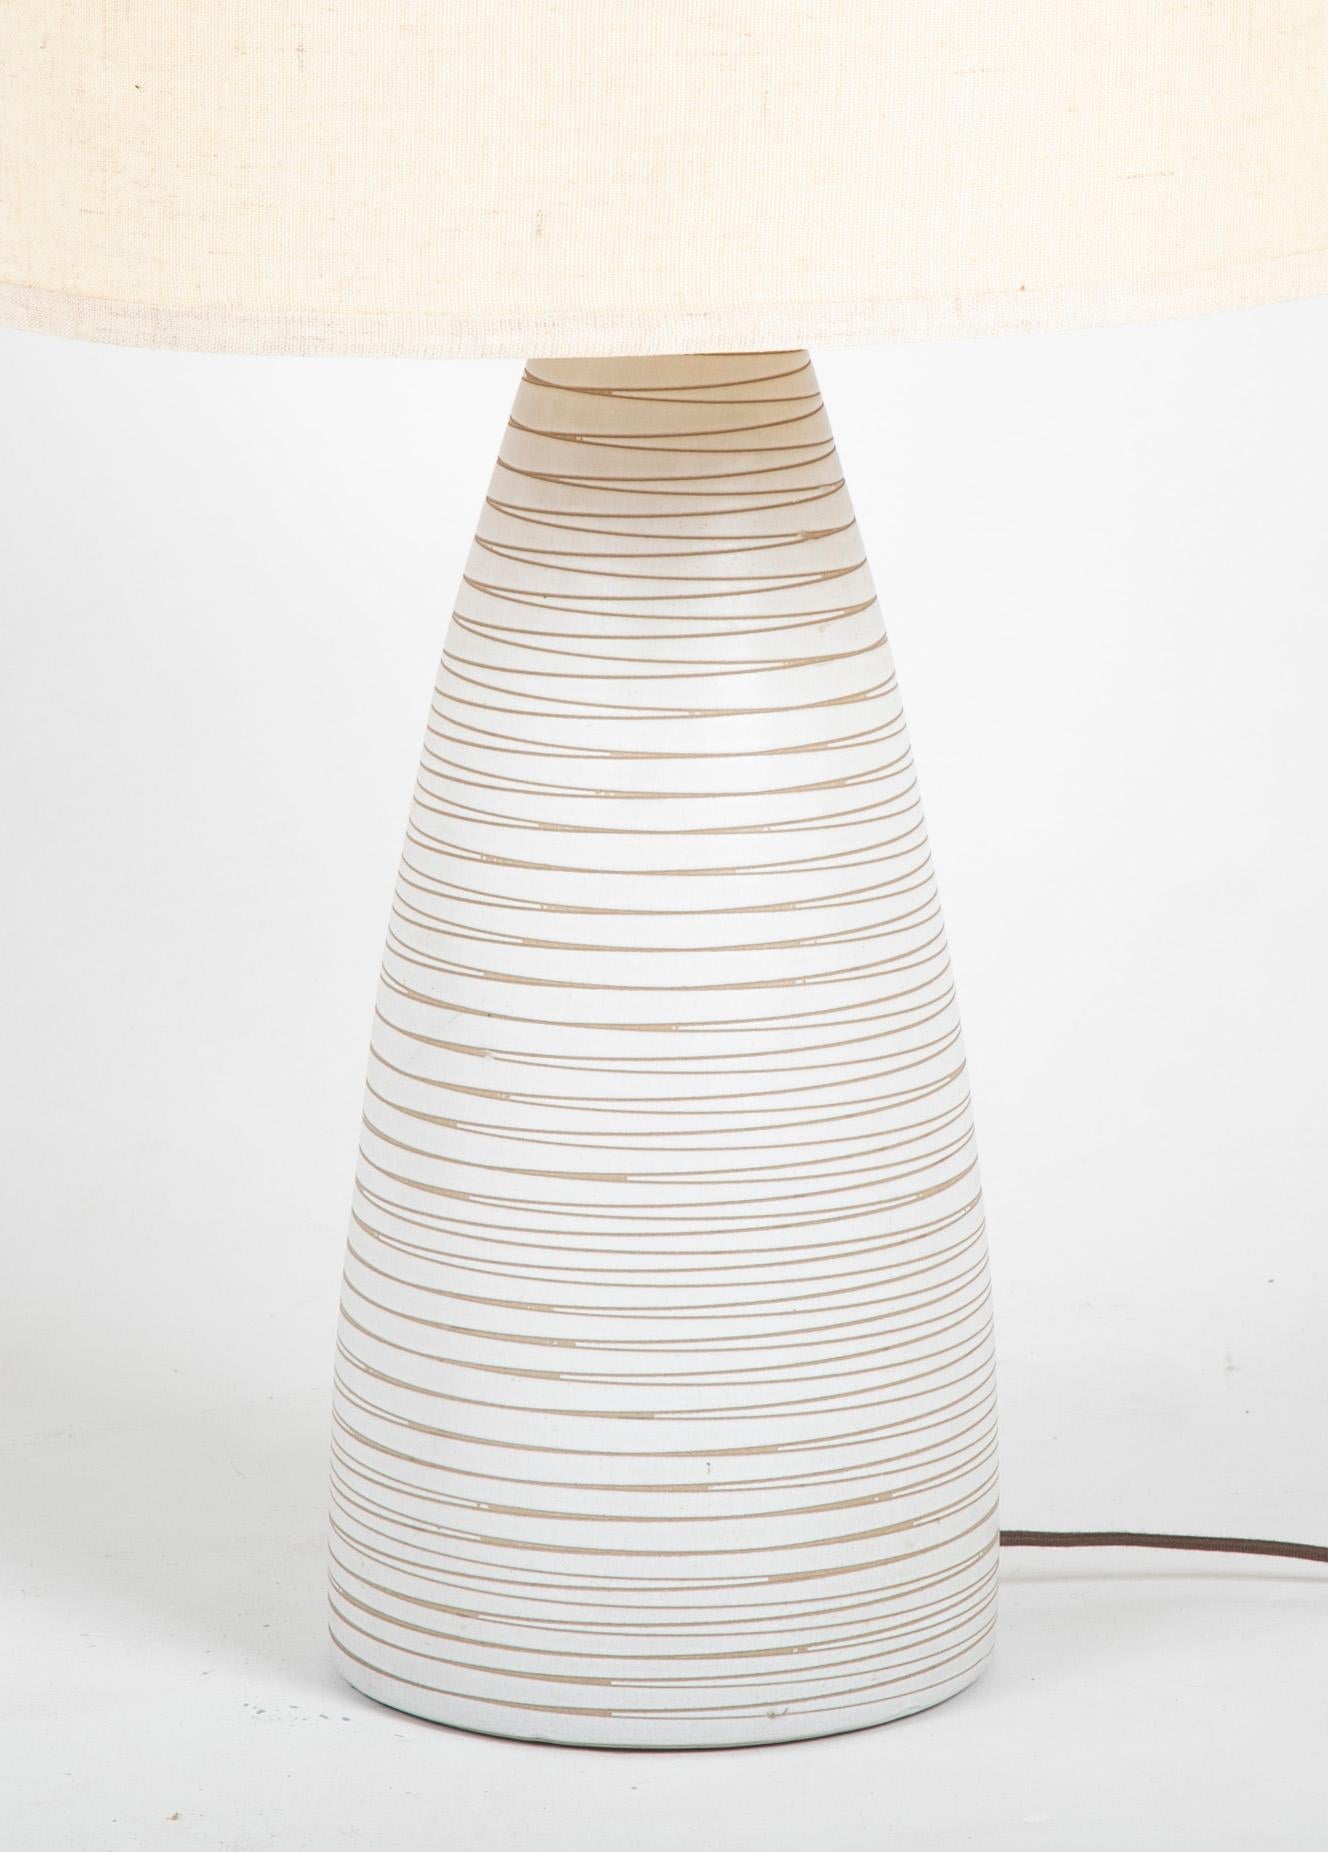 Eine angesengte Martz-Lampe aus weiß glasiertem Steingut mit Halterungen aus Walnussholz. Jetzt mit neuem Farbton.
Martz-Lampen wurden hergestellt von  

Gordon Martz (1924-2015) & Jane Marshall Martz (1929-2007) für die Marshall Studios in